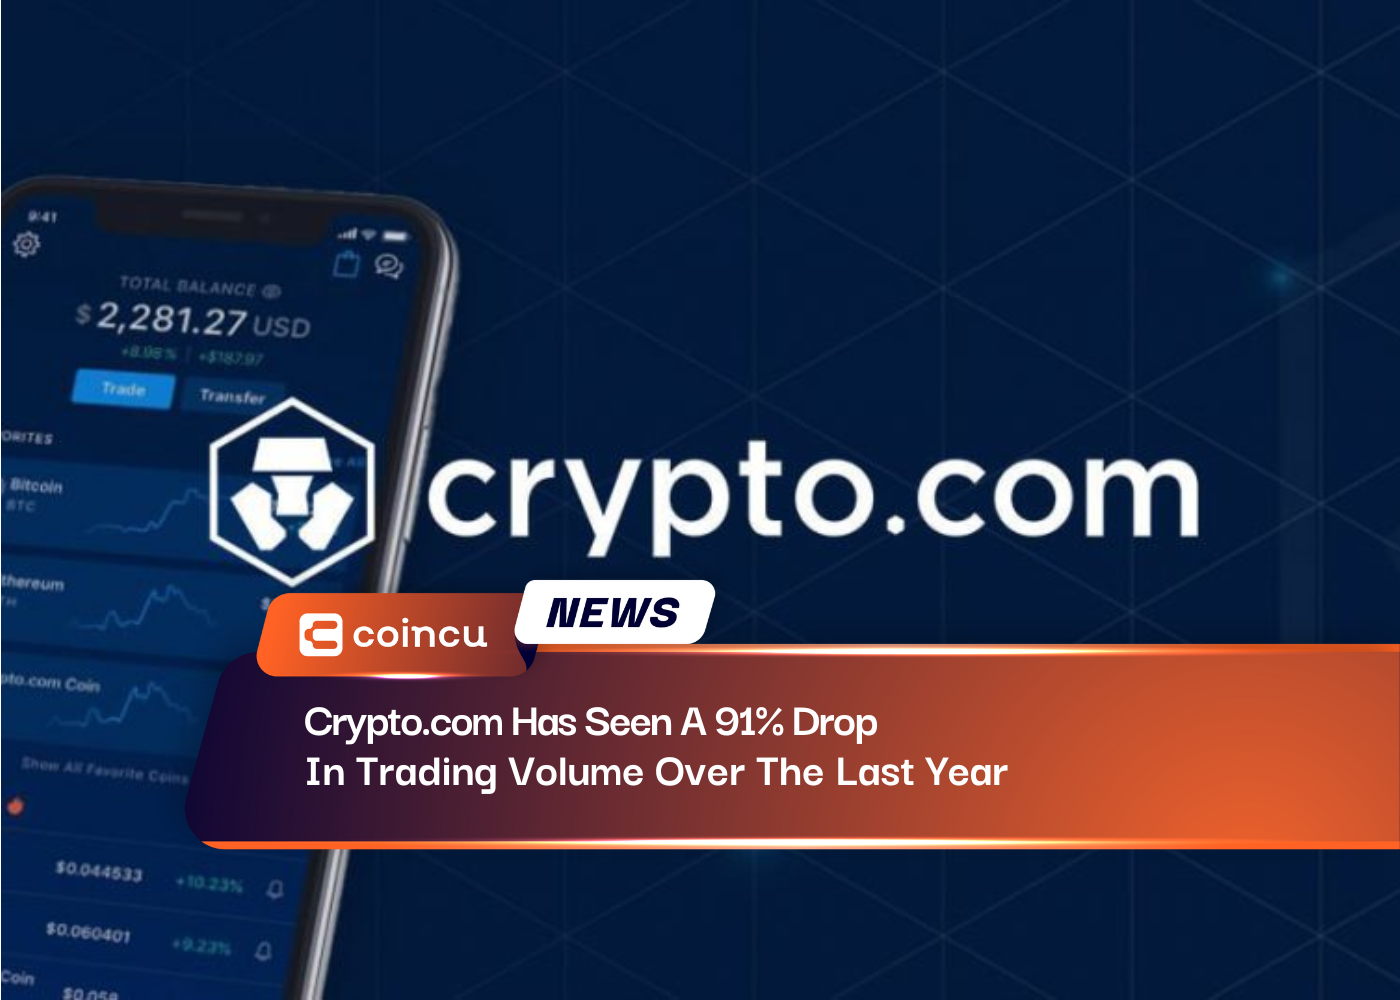 Crypto.com verzeichnete im letzten Jahr einen Rückgang des Handelsvolumens um 91 %